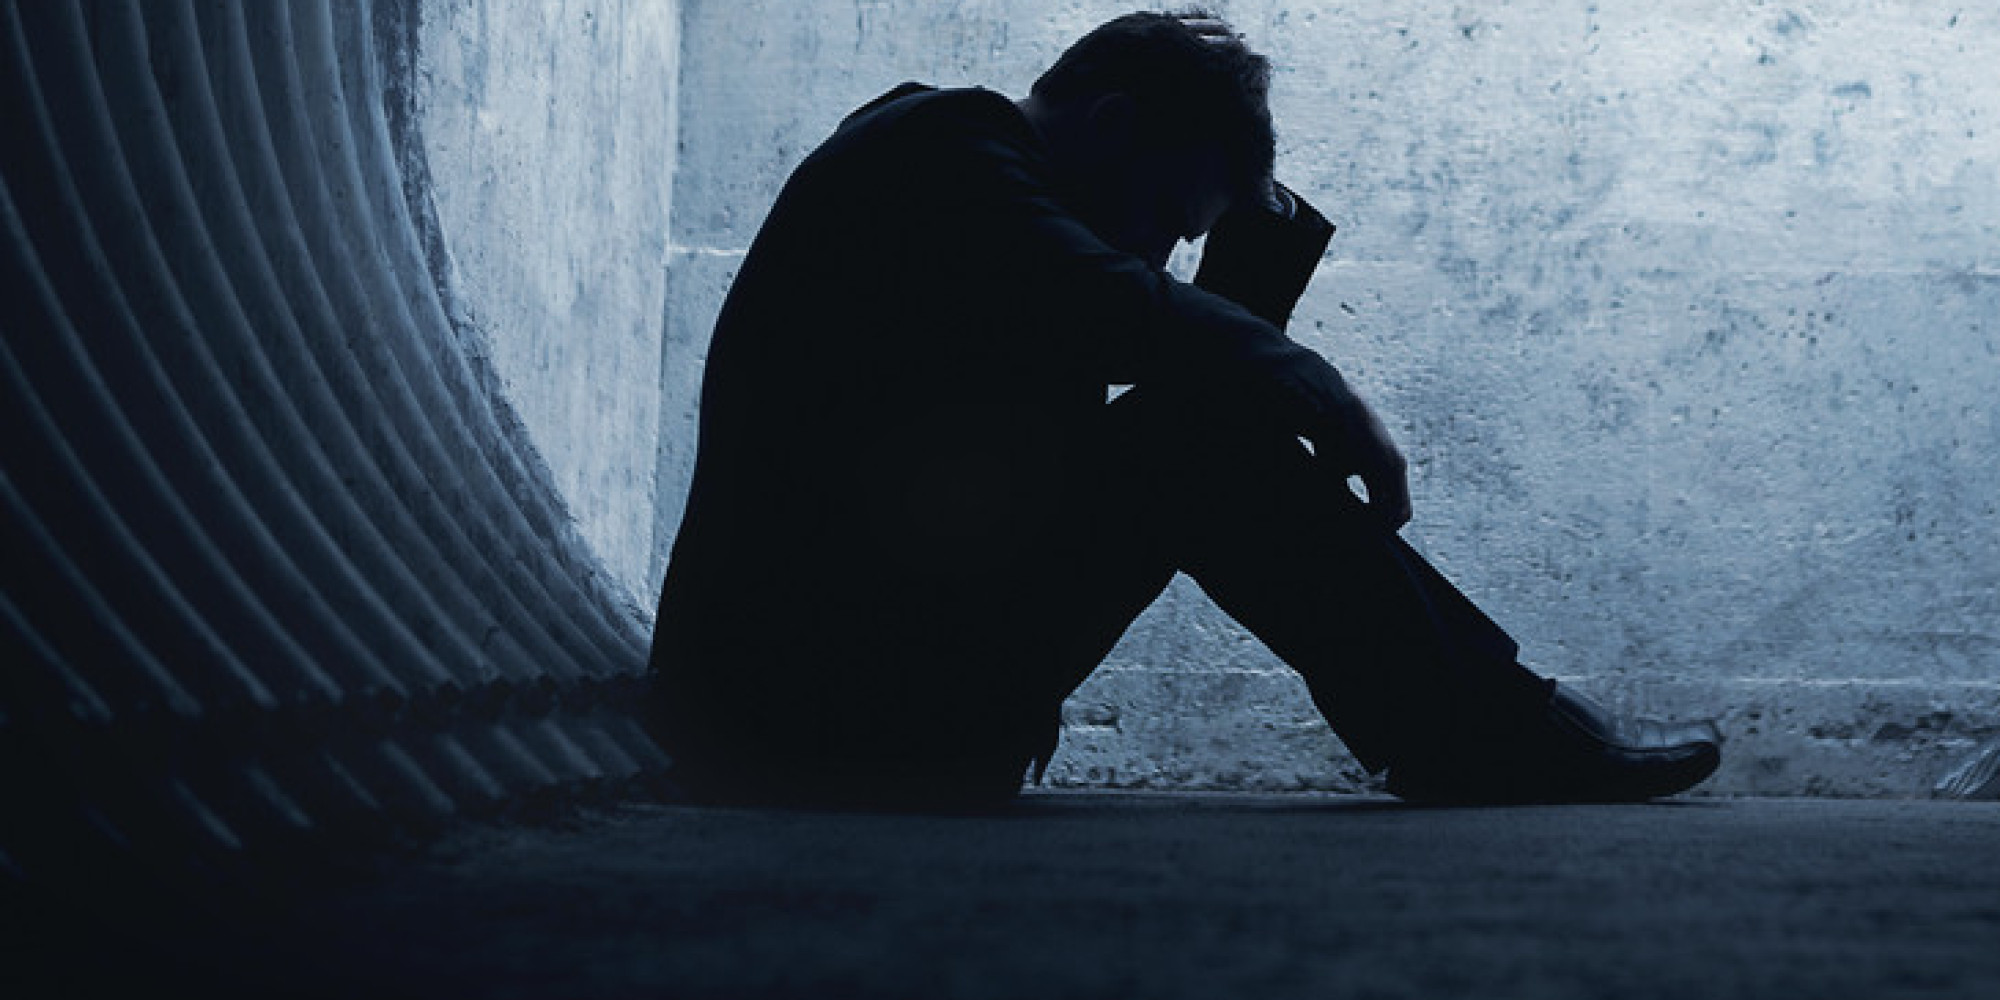 Prevenindo contra o suicídio: se estiver com depressão, busque ajuda